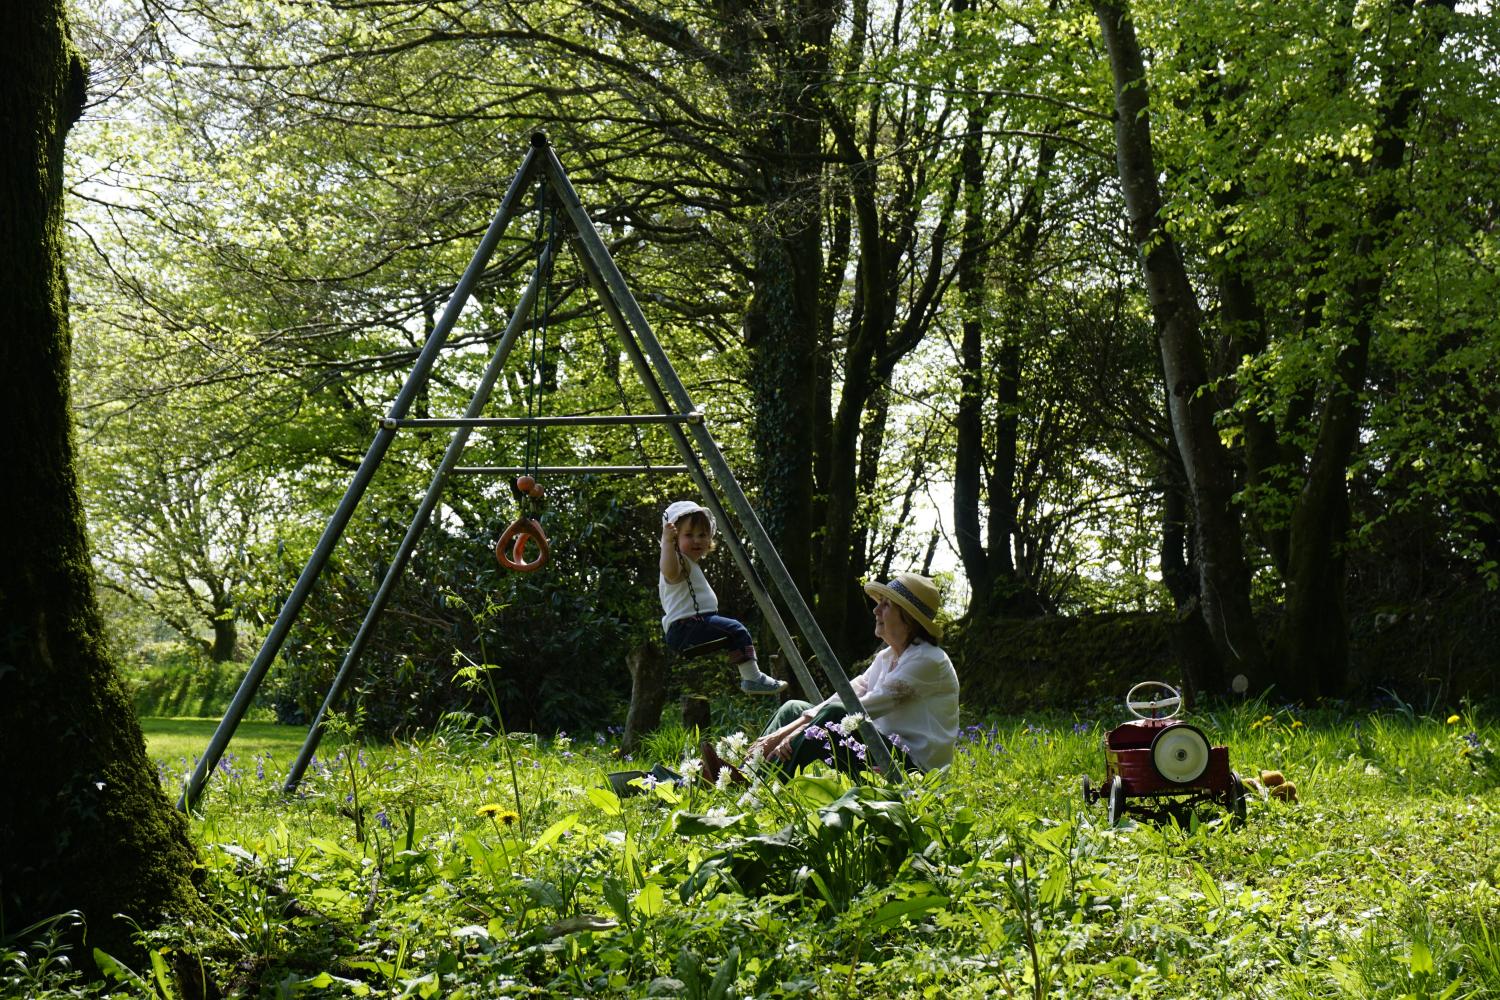 Swings in the garden woodland